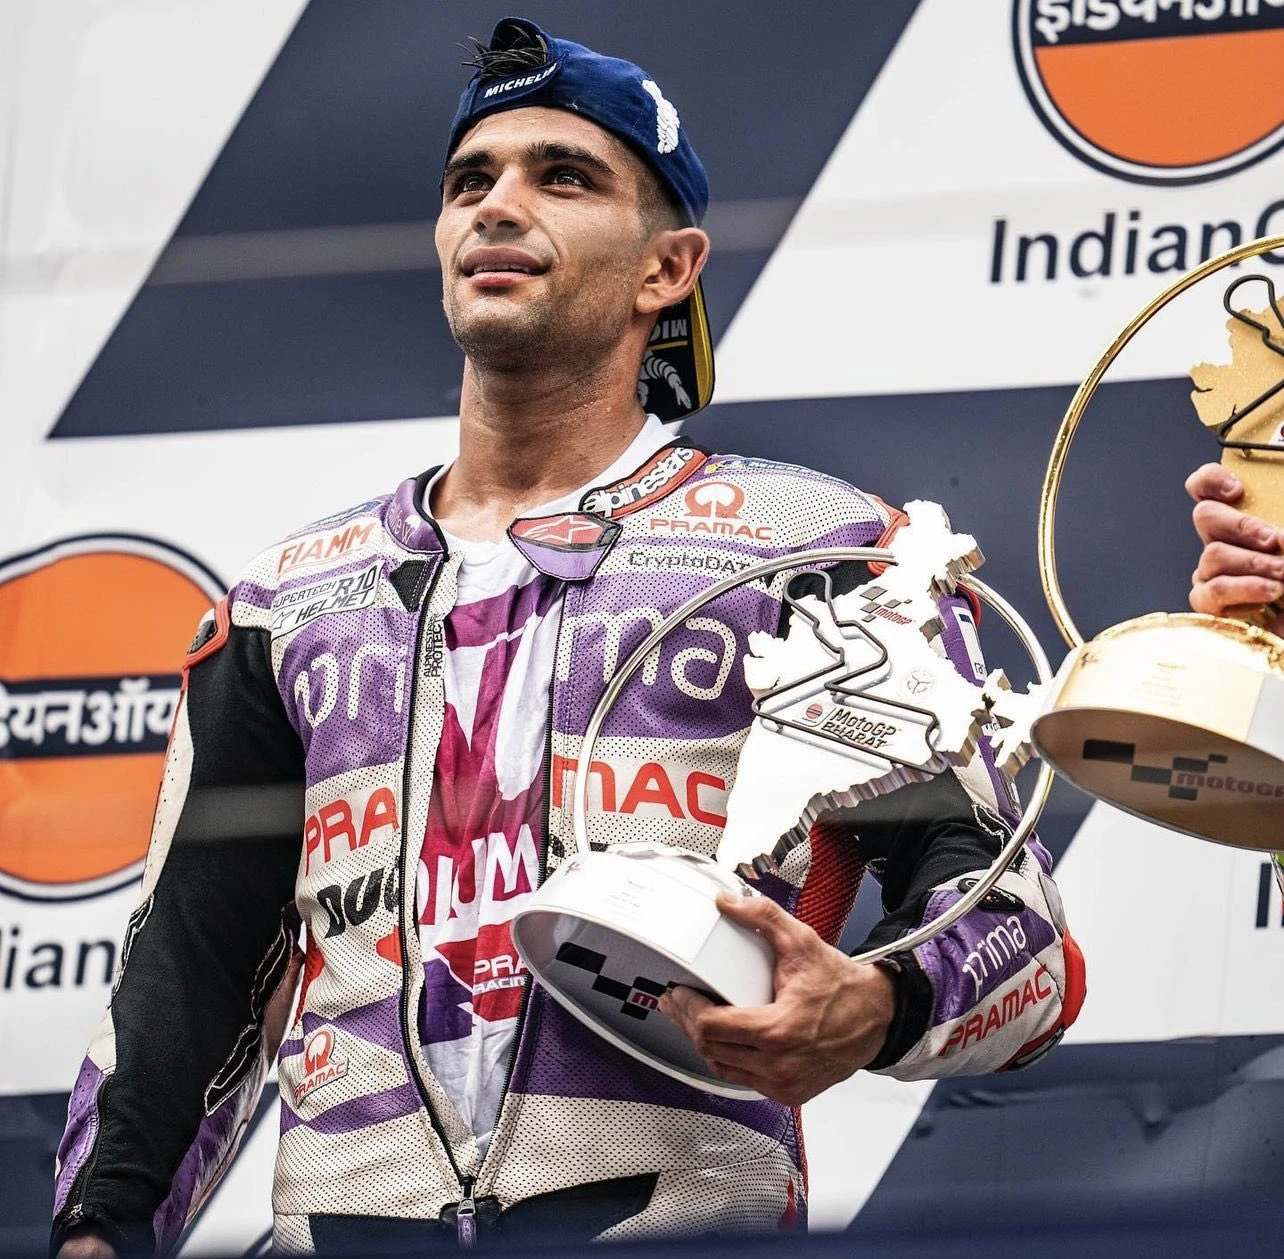 MotoGP | Hindistan’da ilk yarış gallery image 11